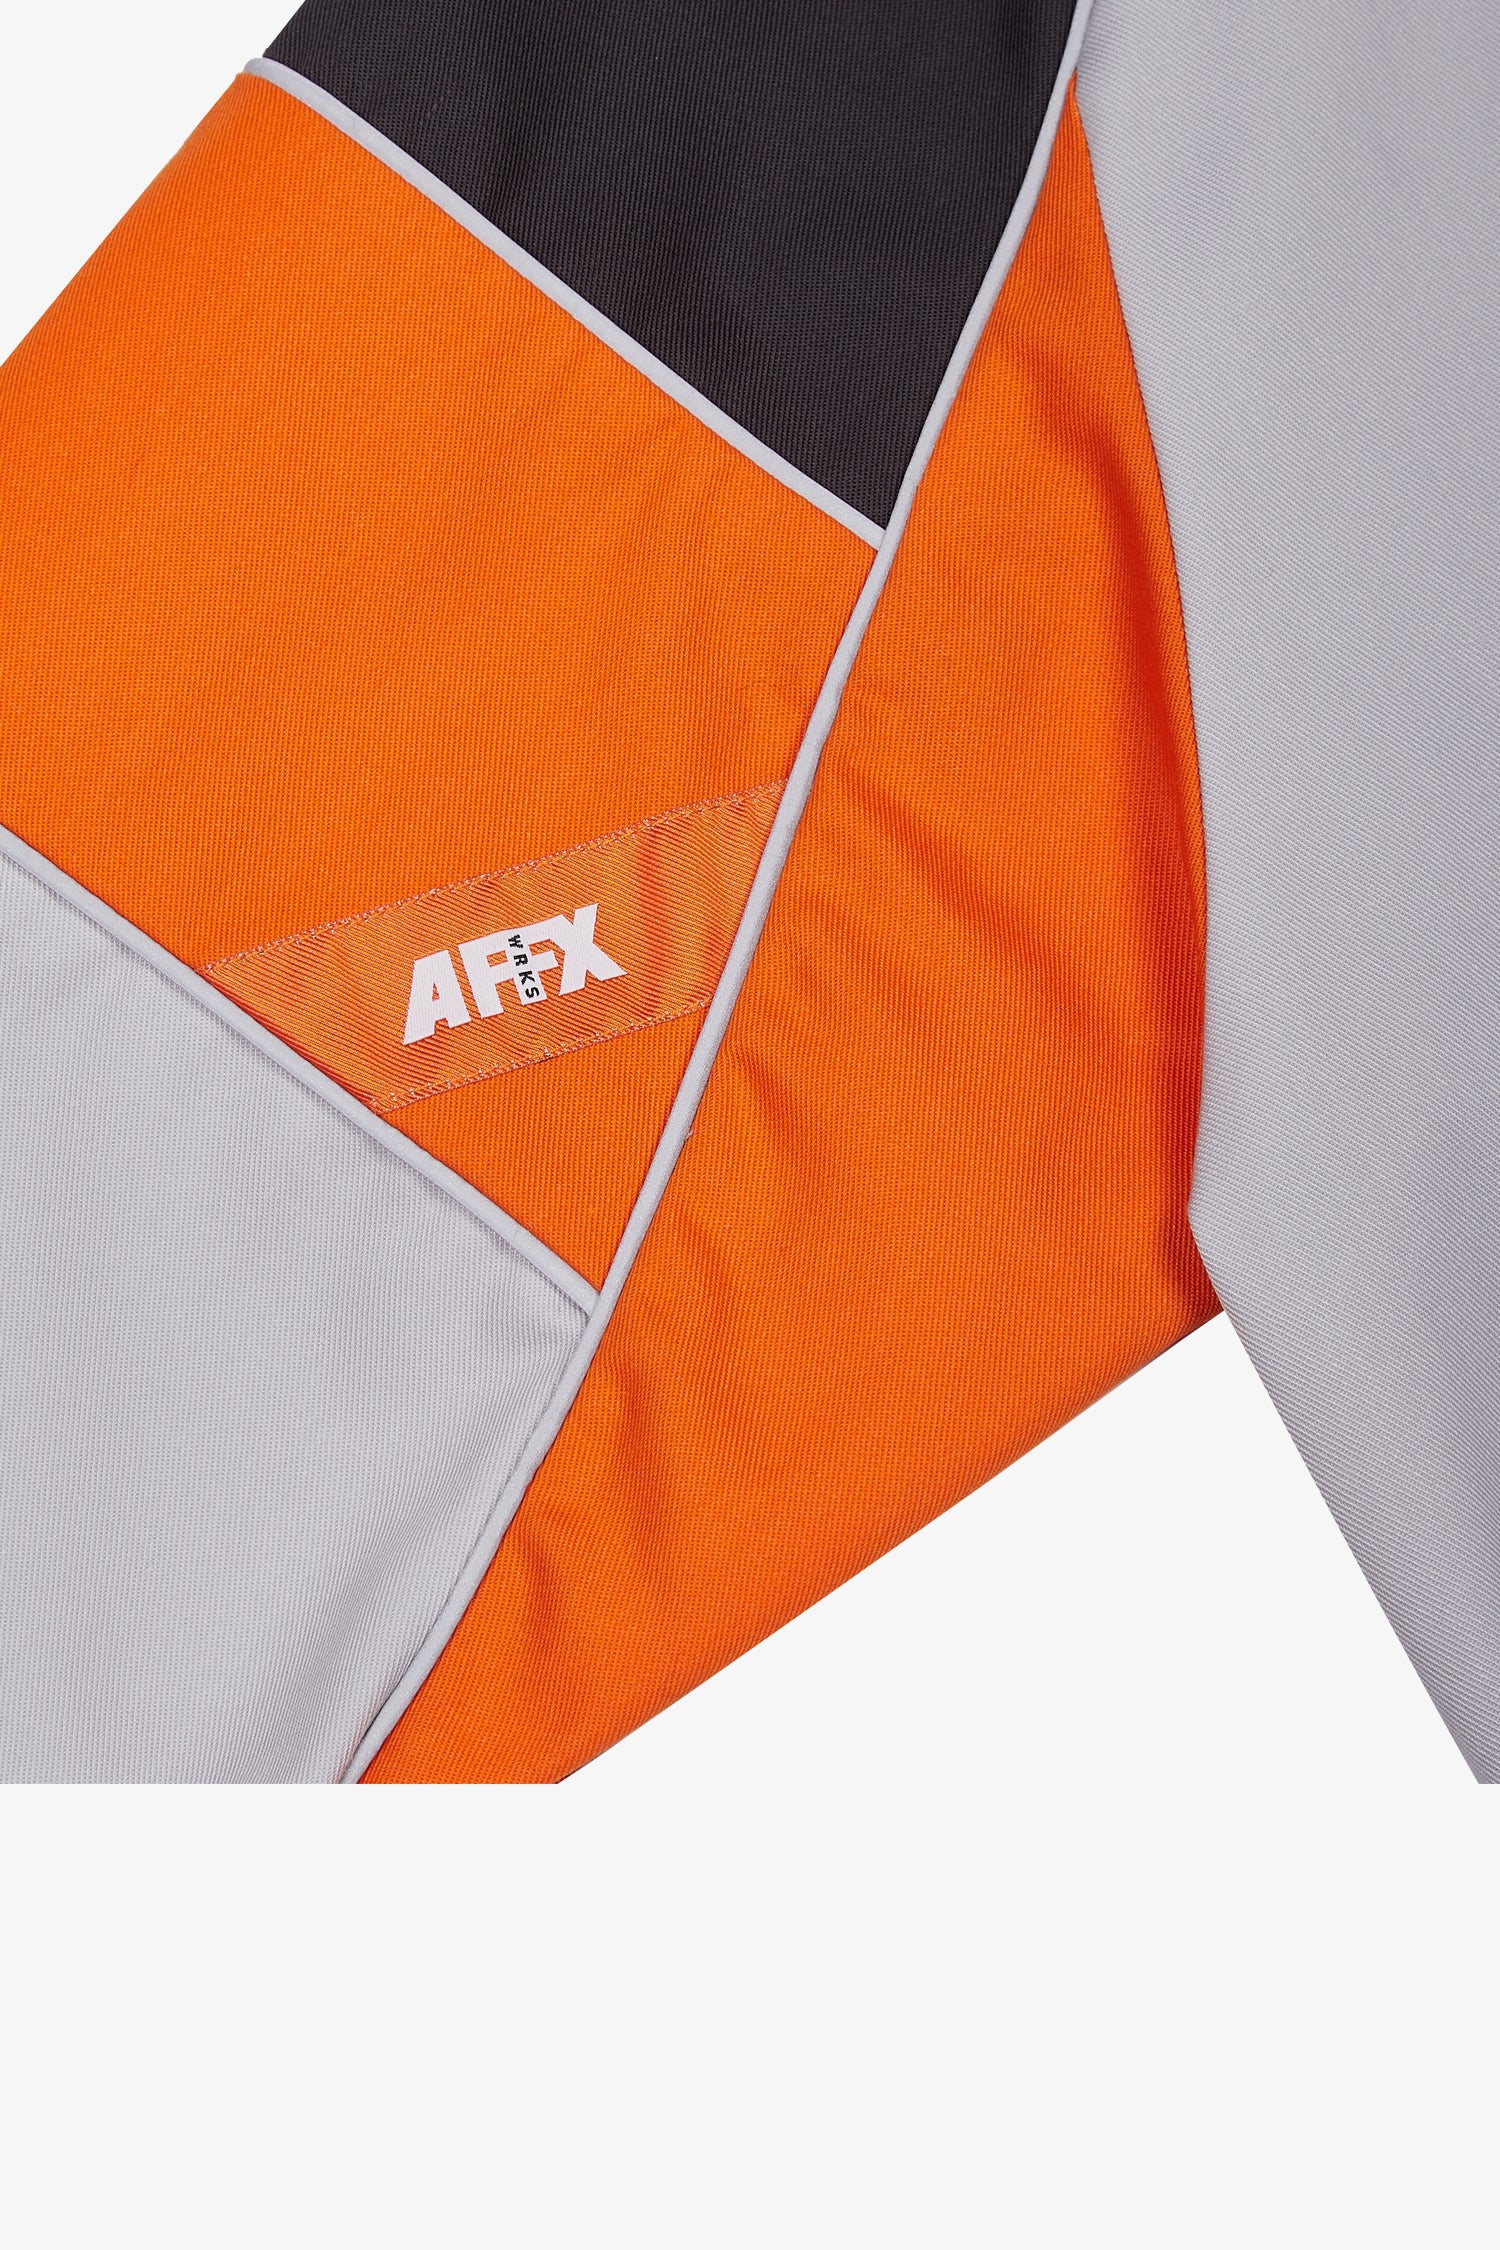 Selectshop FRAME - AFFIX Tri-Color Work Jacket Outerwear Dubai